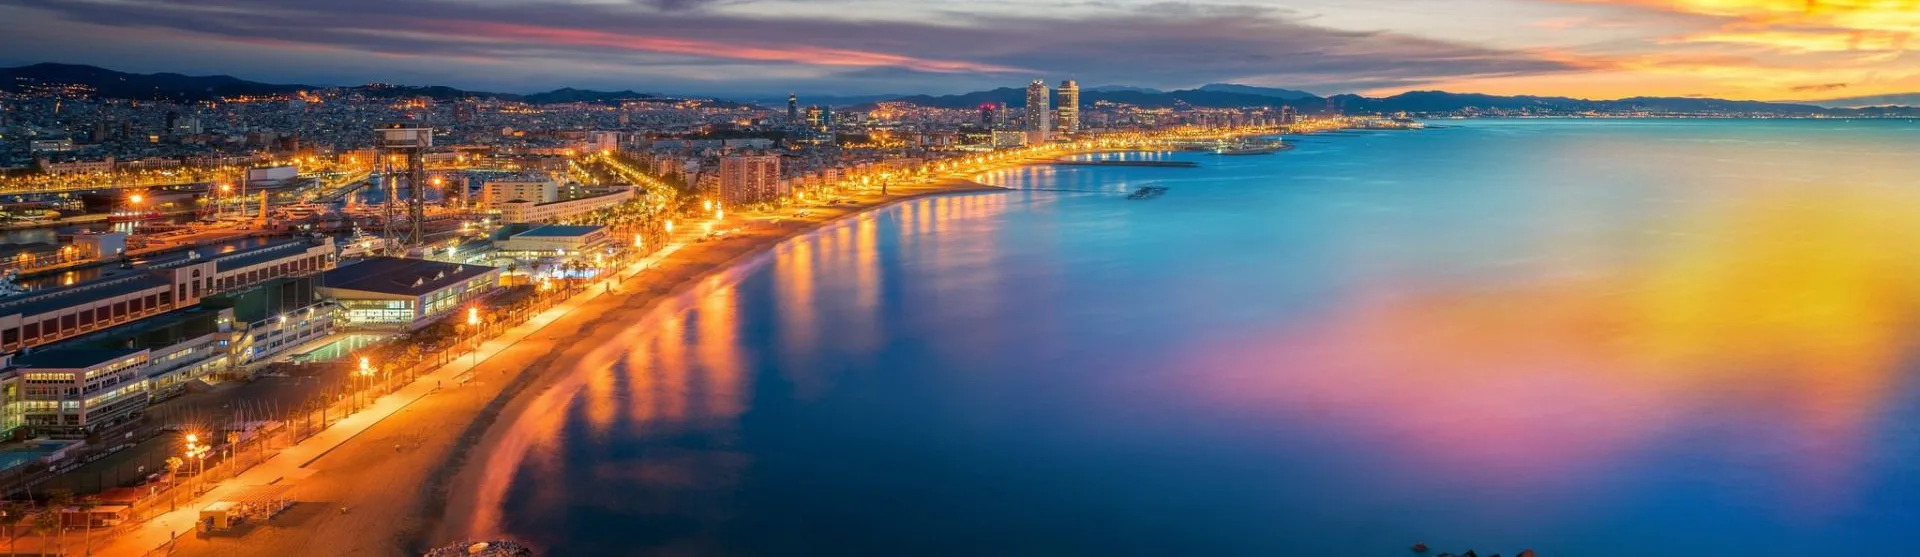 Krydstogt i Middelhavet - Barcelona